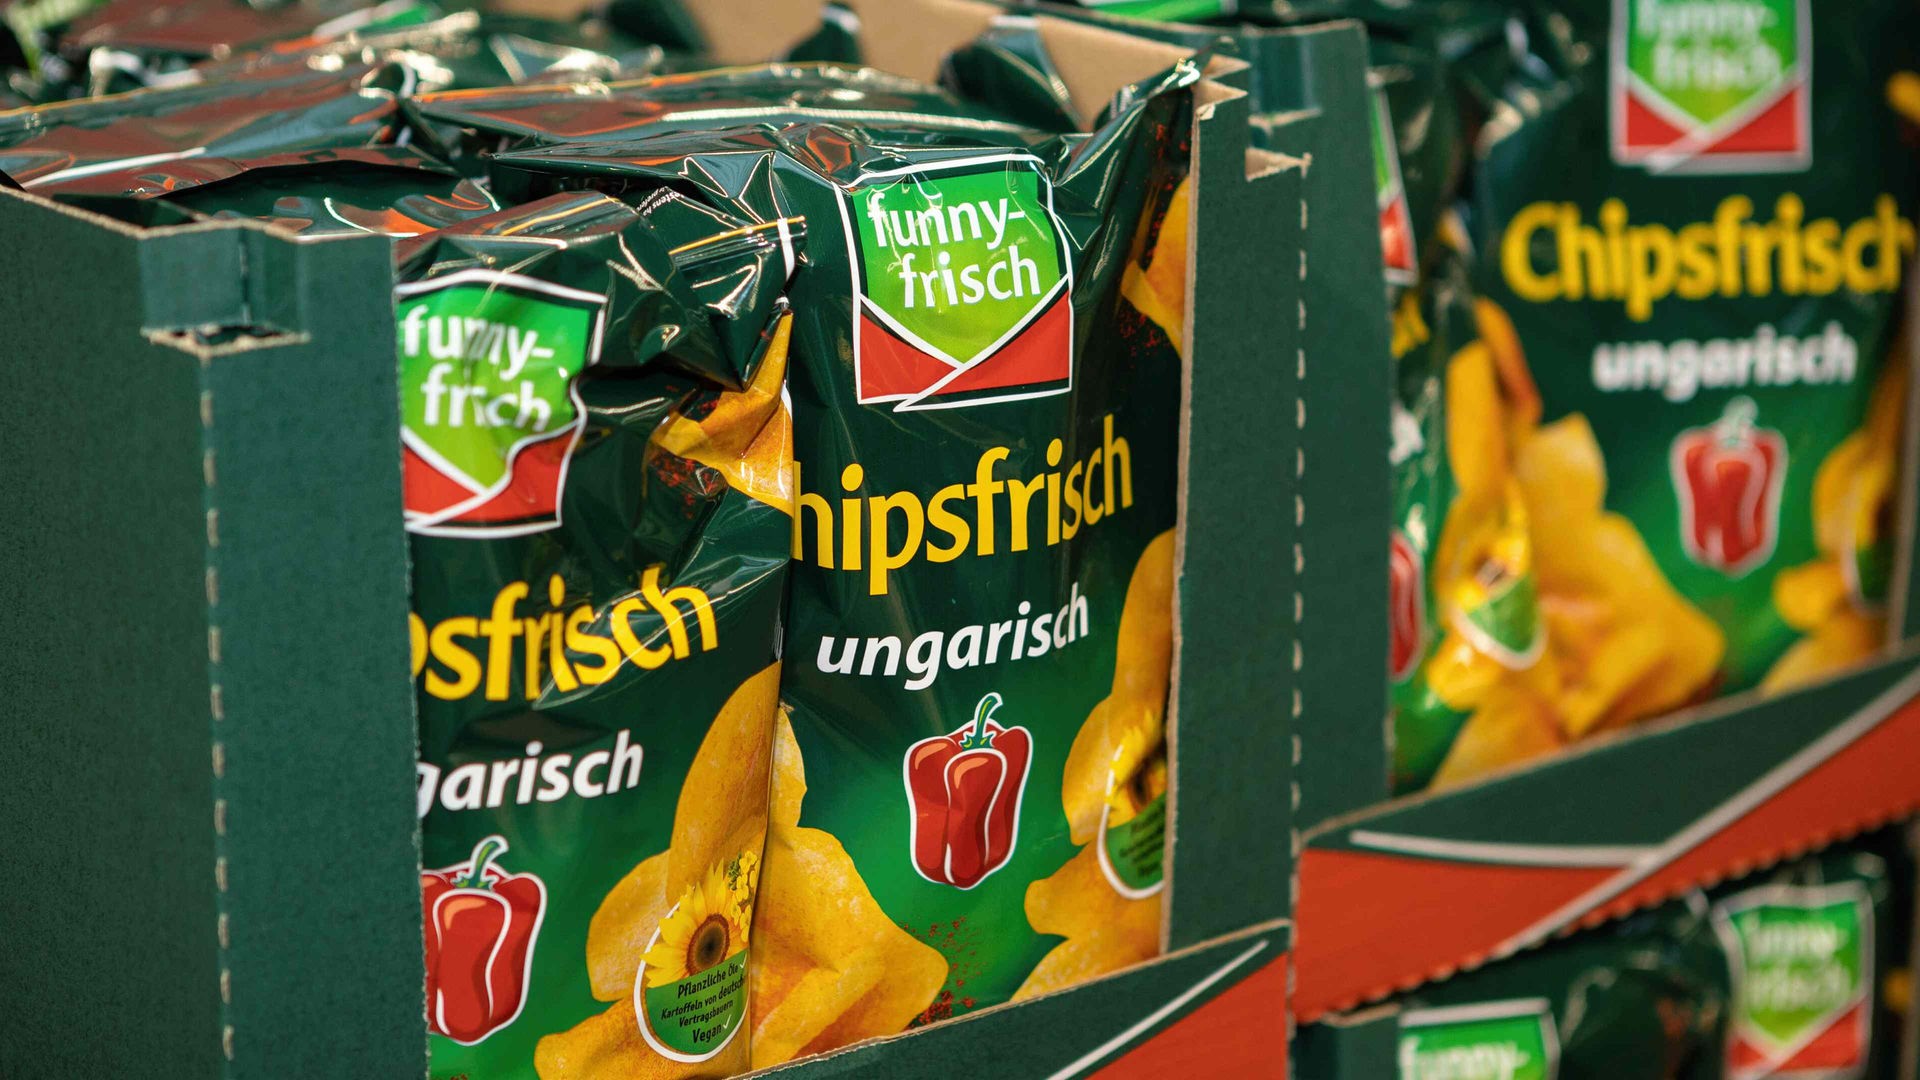 Chips-Rückruf bei Funny-Frisch - Verbraucher in betroffen - WDR - NRW Nachrichten